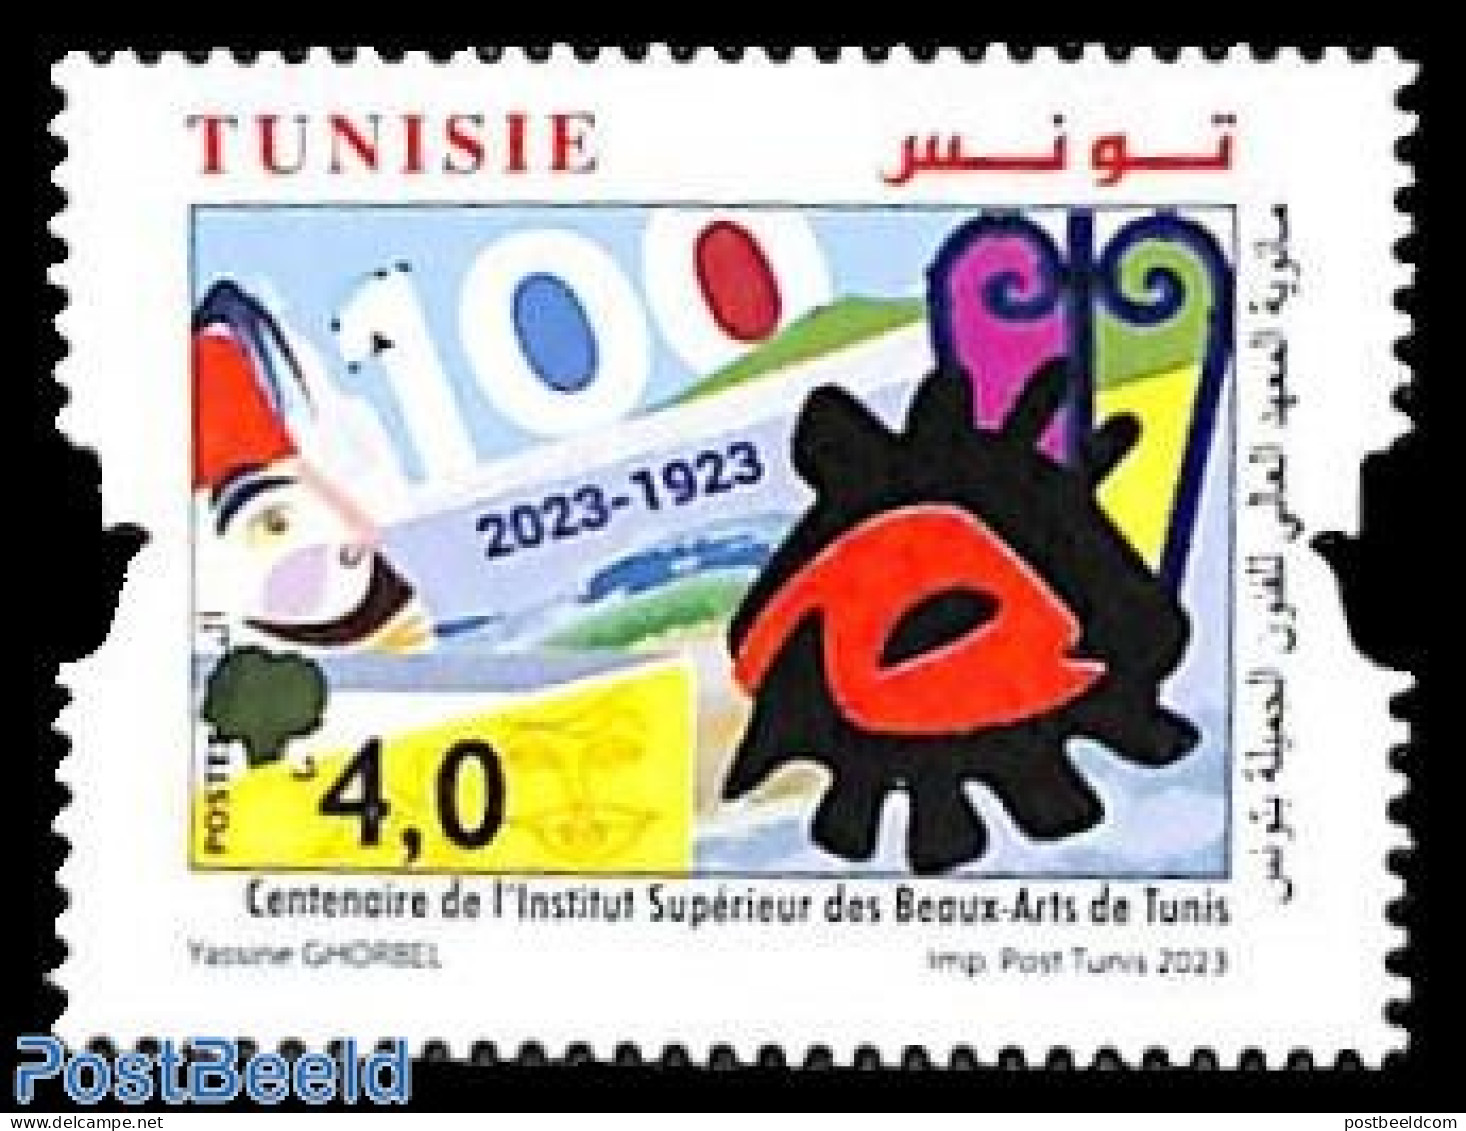 Tunisia 2023 Art School Centenary 1v, Mint NH, Science - Education - Tunesien (1956-...)